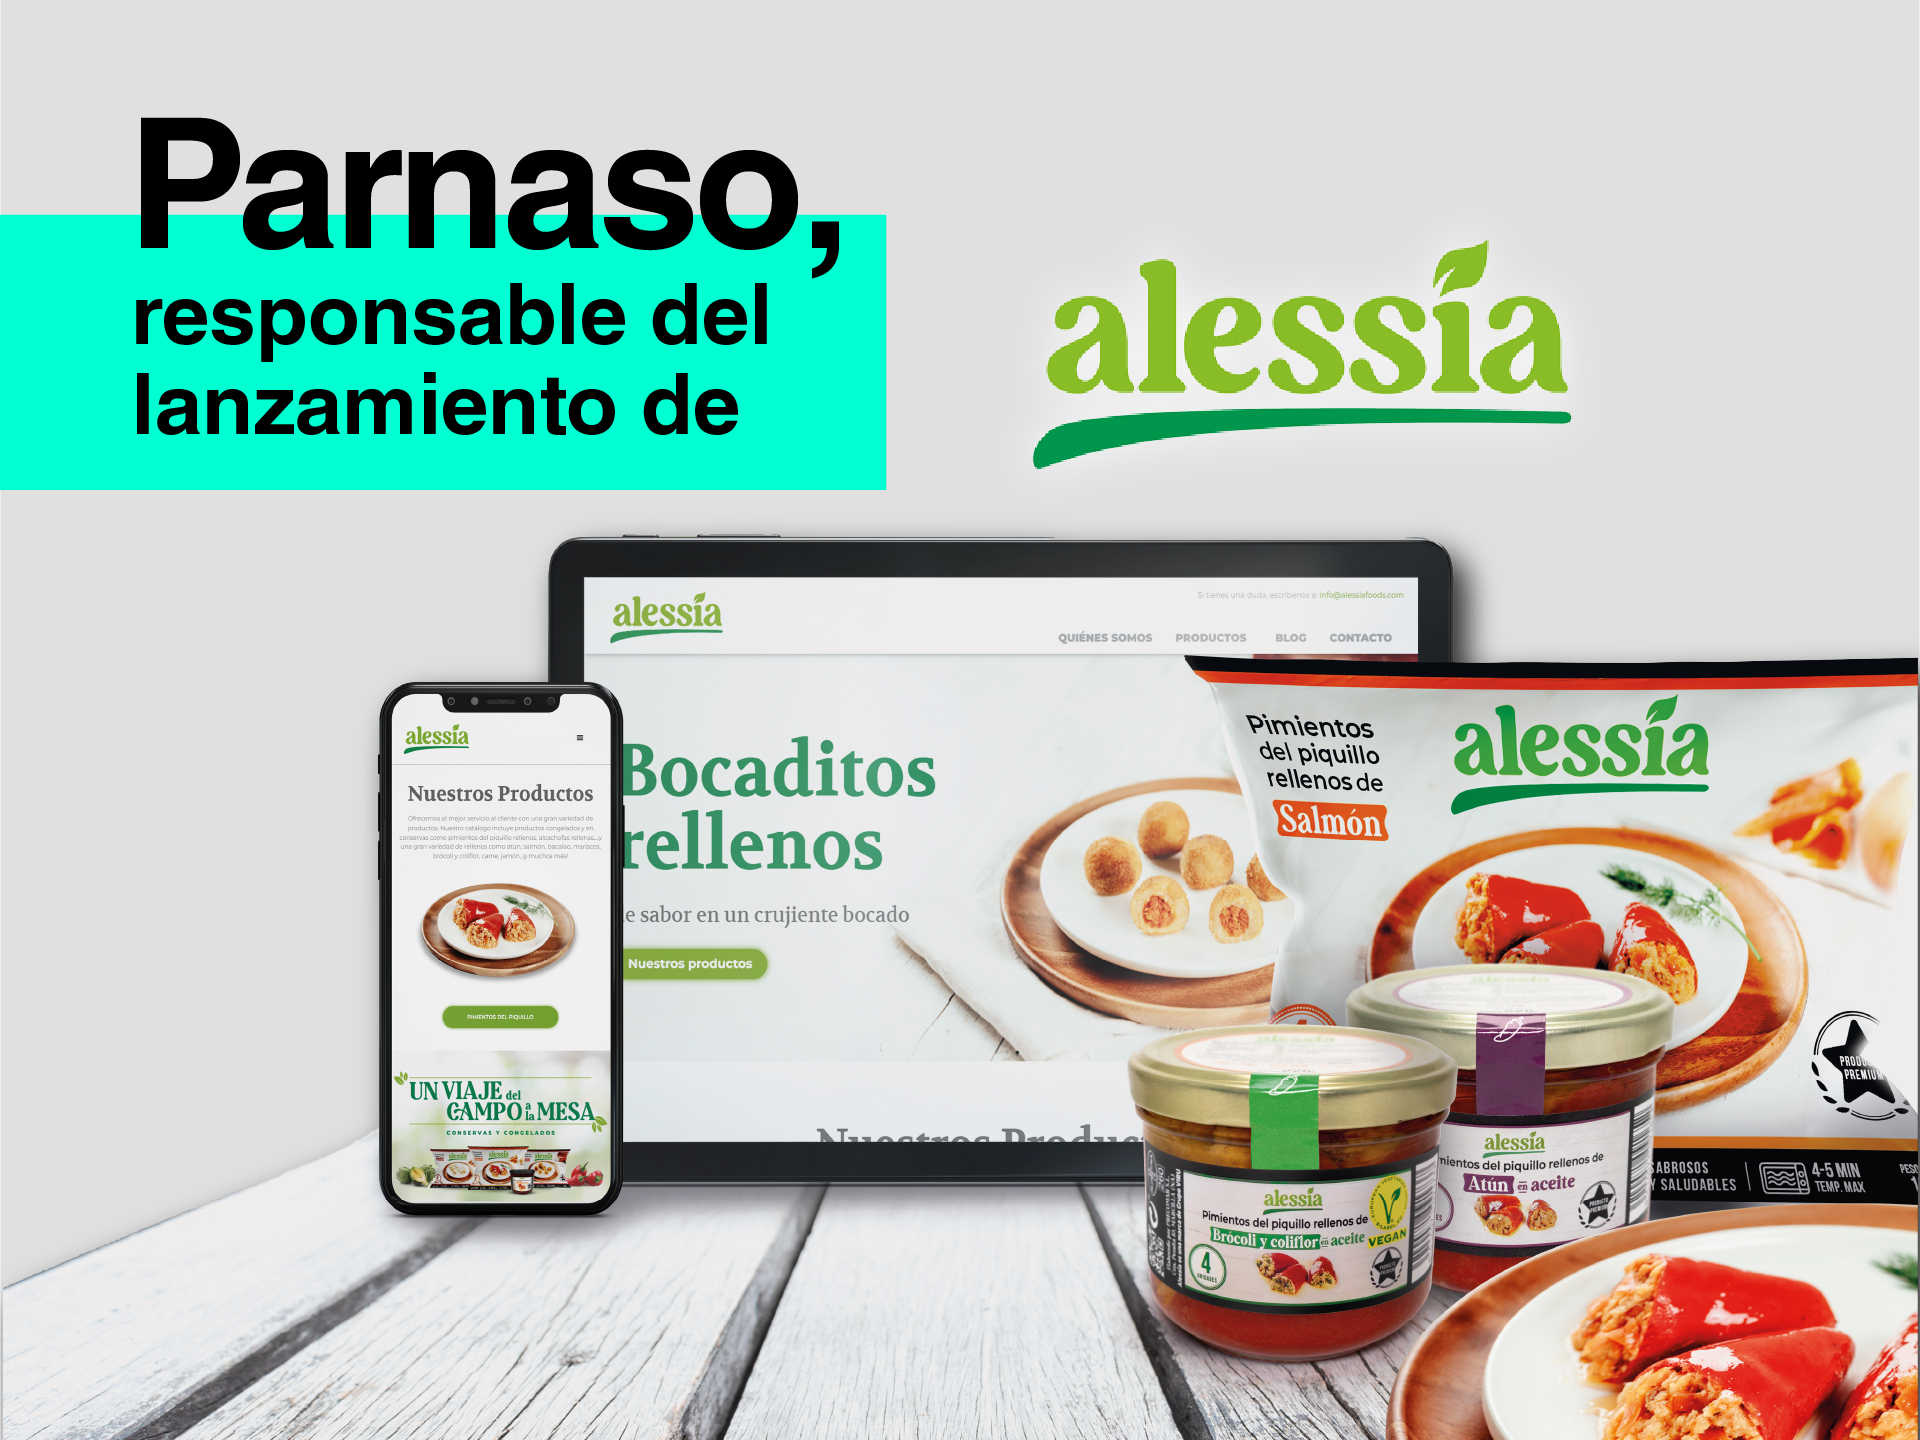 Parnaso encargada del lanzamiento de Alessia, la nueva marca de Precomar - Parnaso